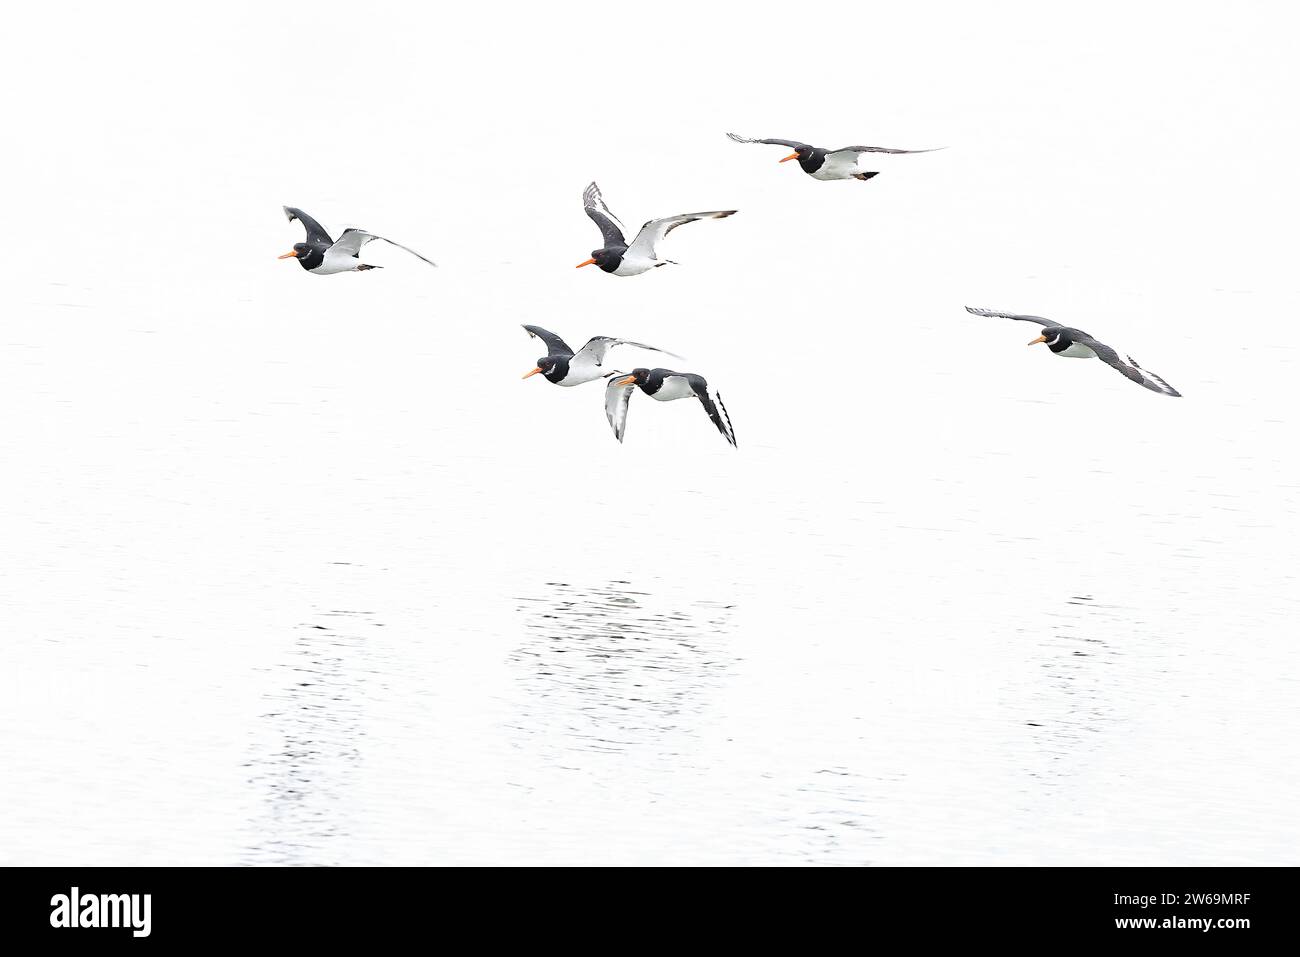 Eine Herde Enten im Flug über einem ruhigen Gewässer mit minimalistischer weißer Kulisse. Stockfoto